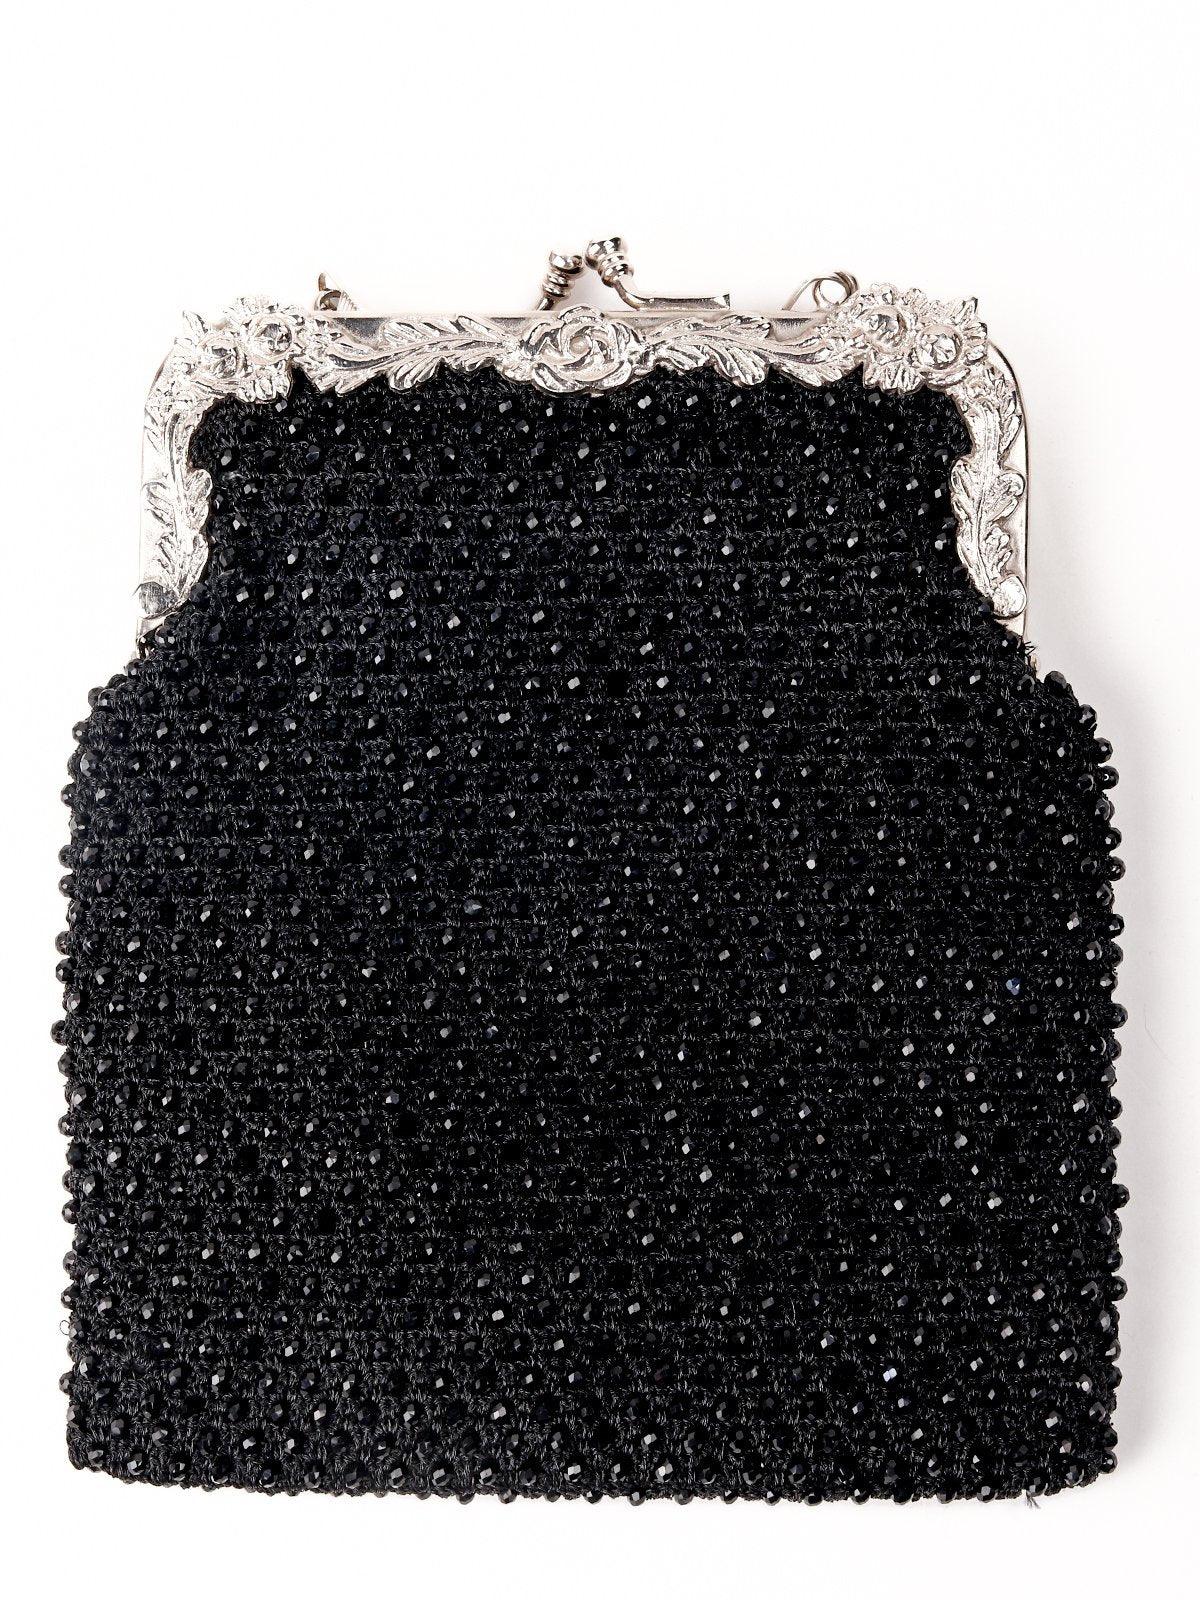 Shining black,floral border sling bag - Odette